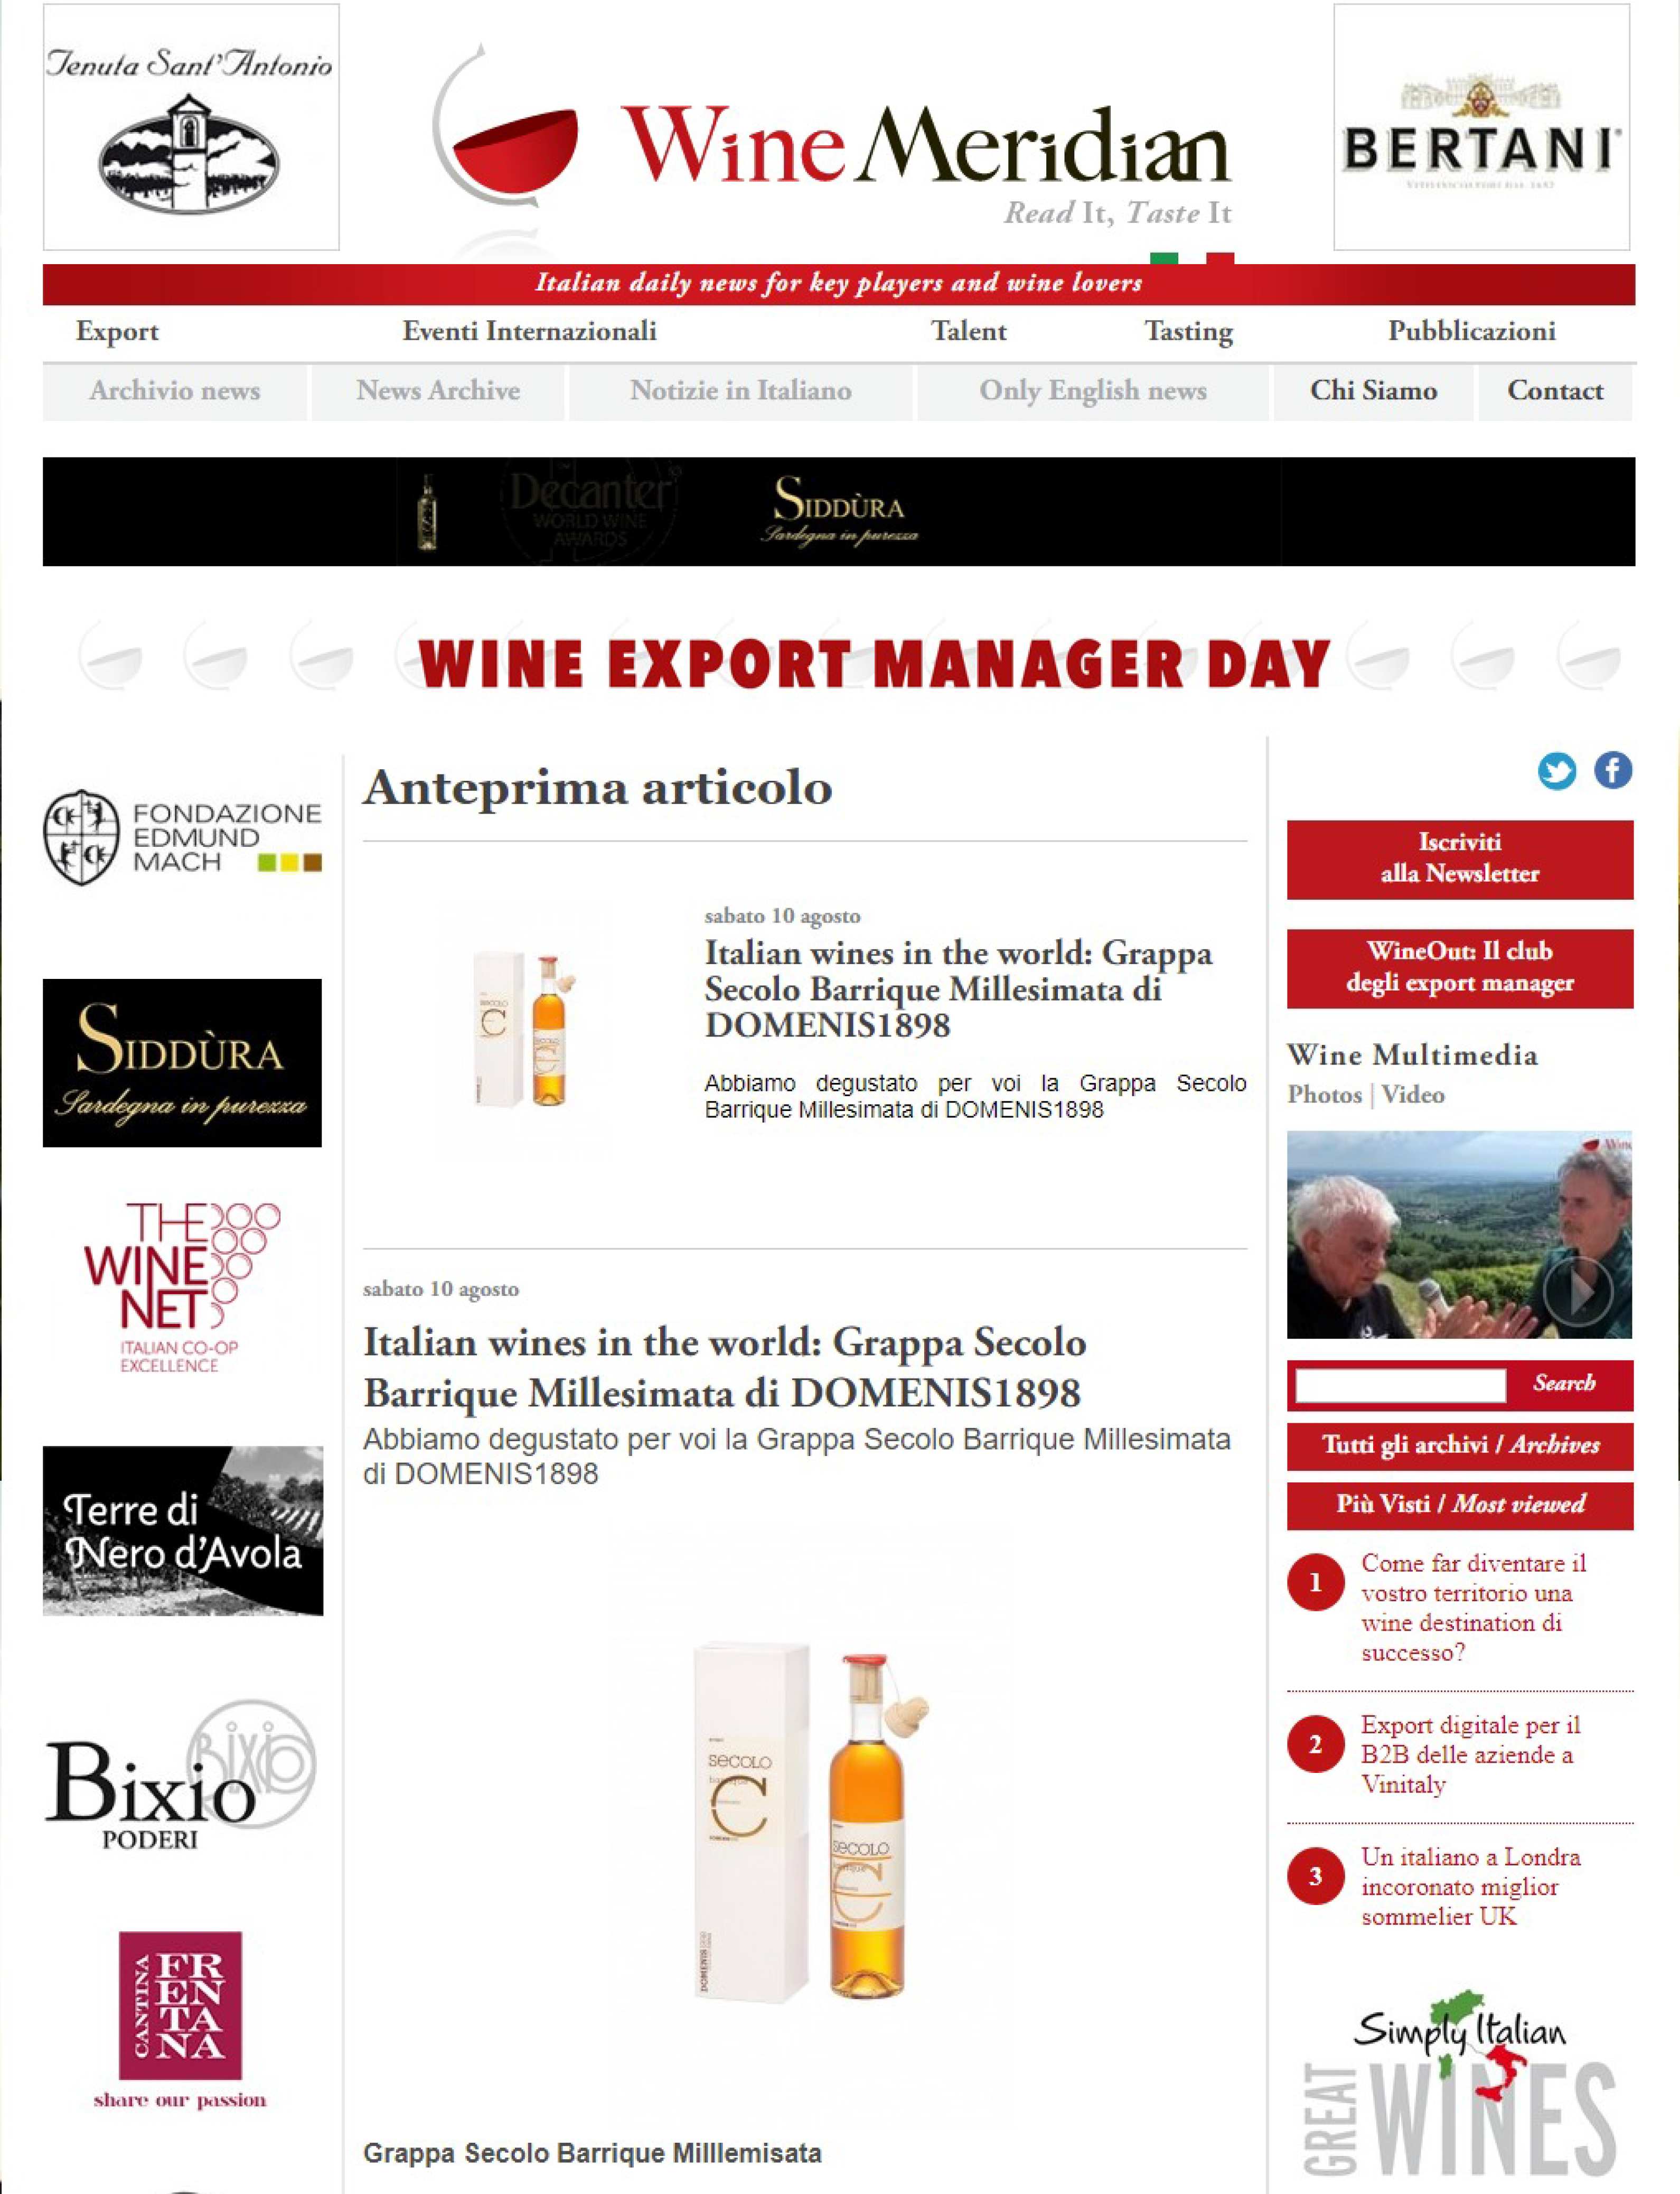 2019 agosto 10: WineMeridian – Italian wines in the world: Grappa Secolo Barrique Millesimata di DOMENIS1898